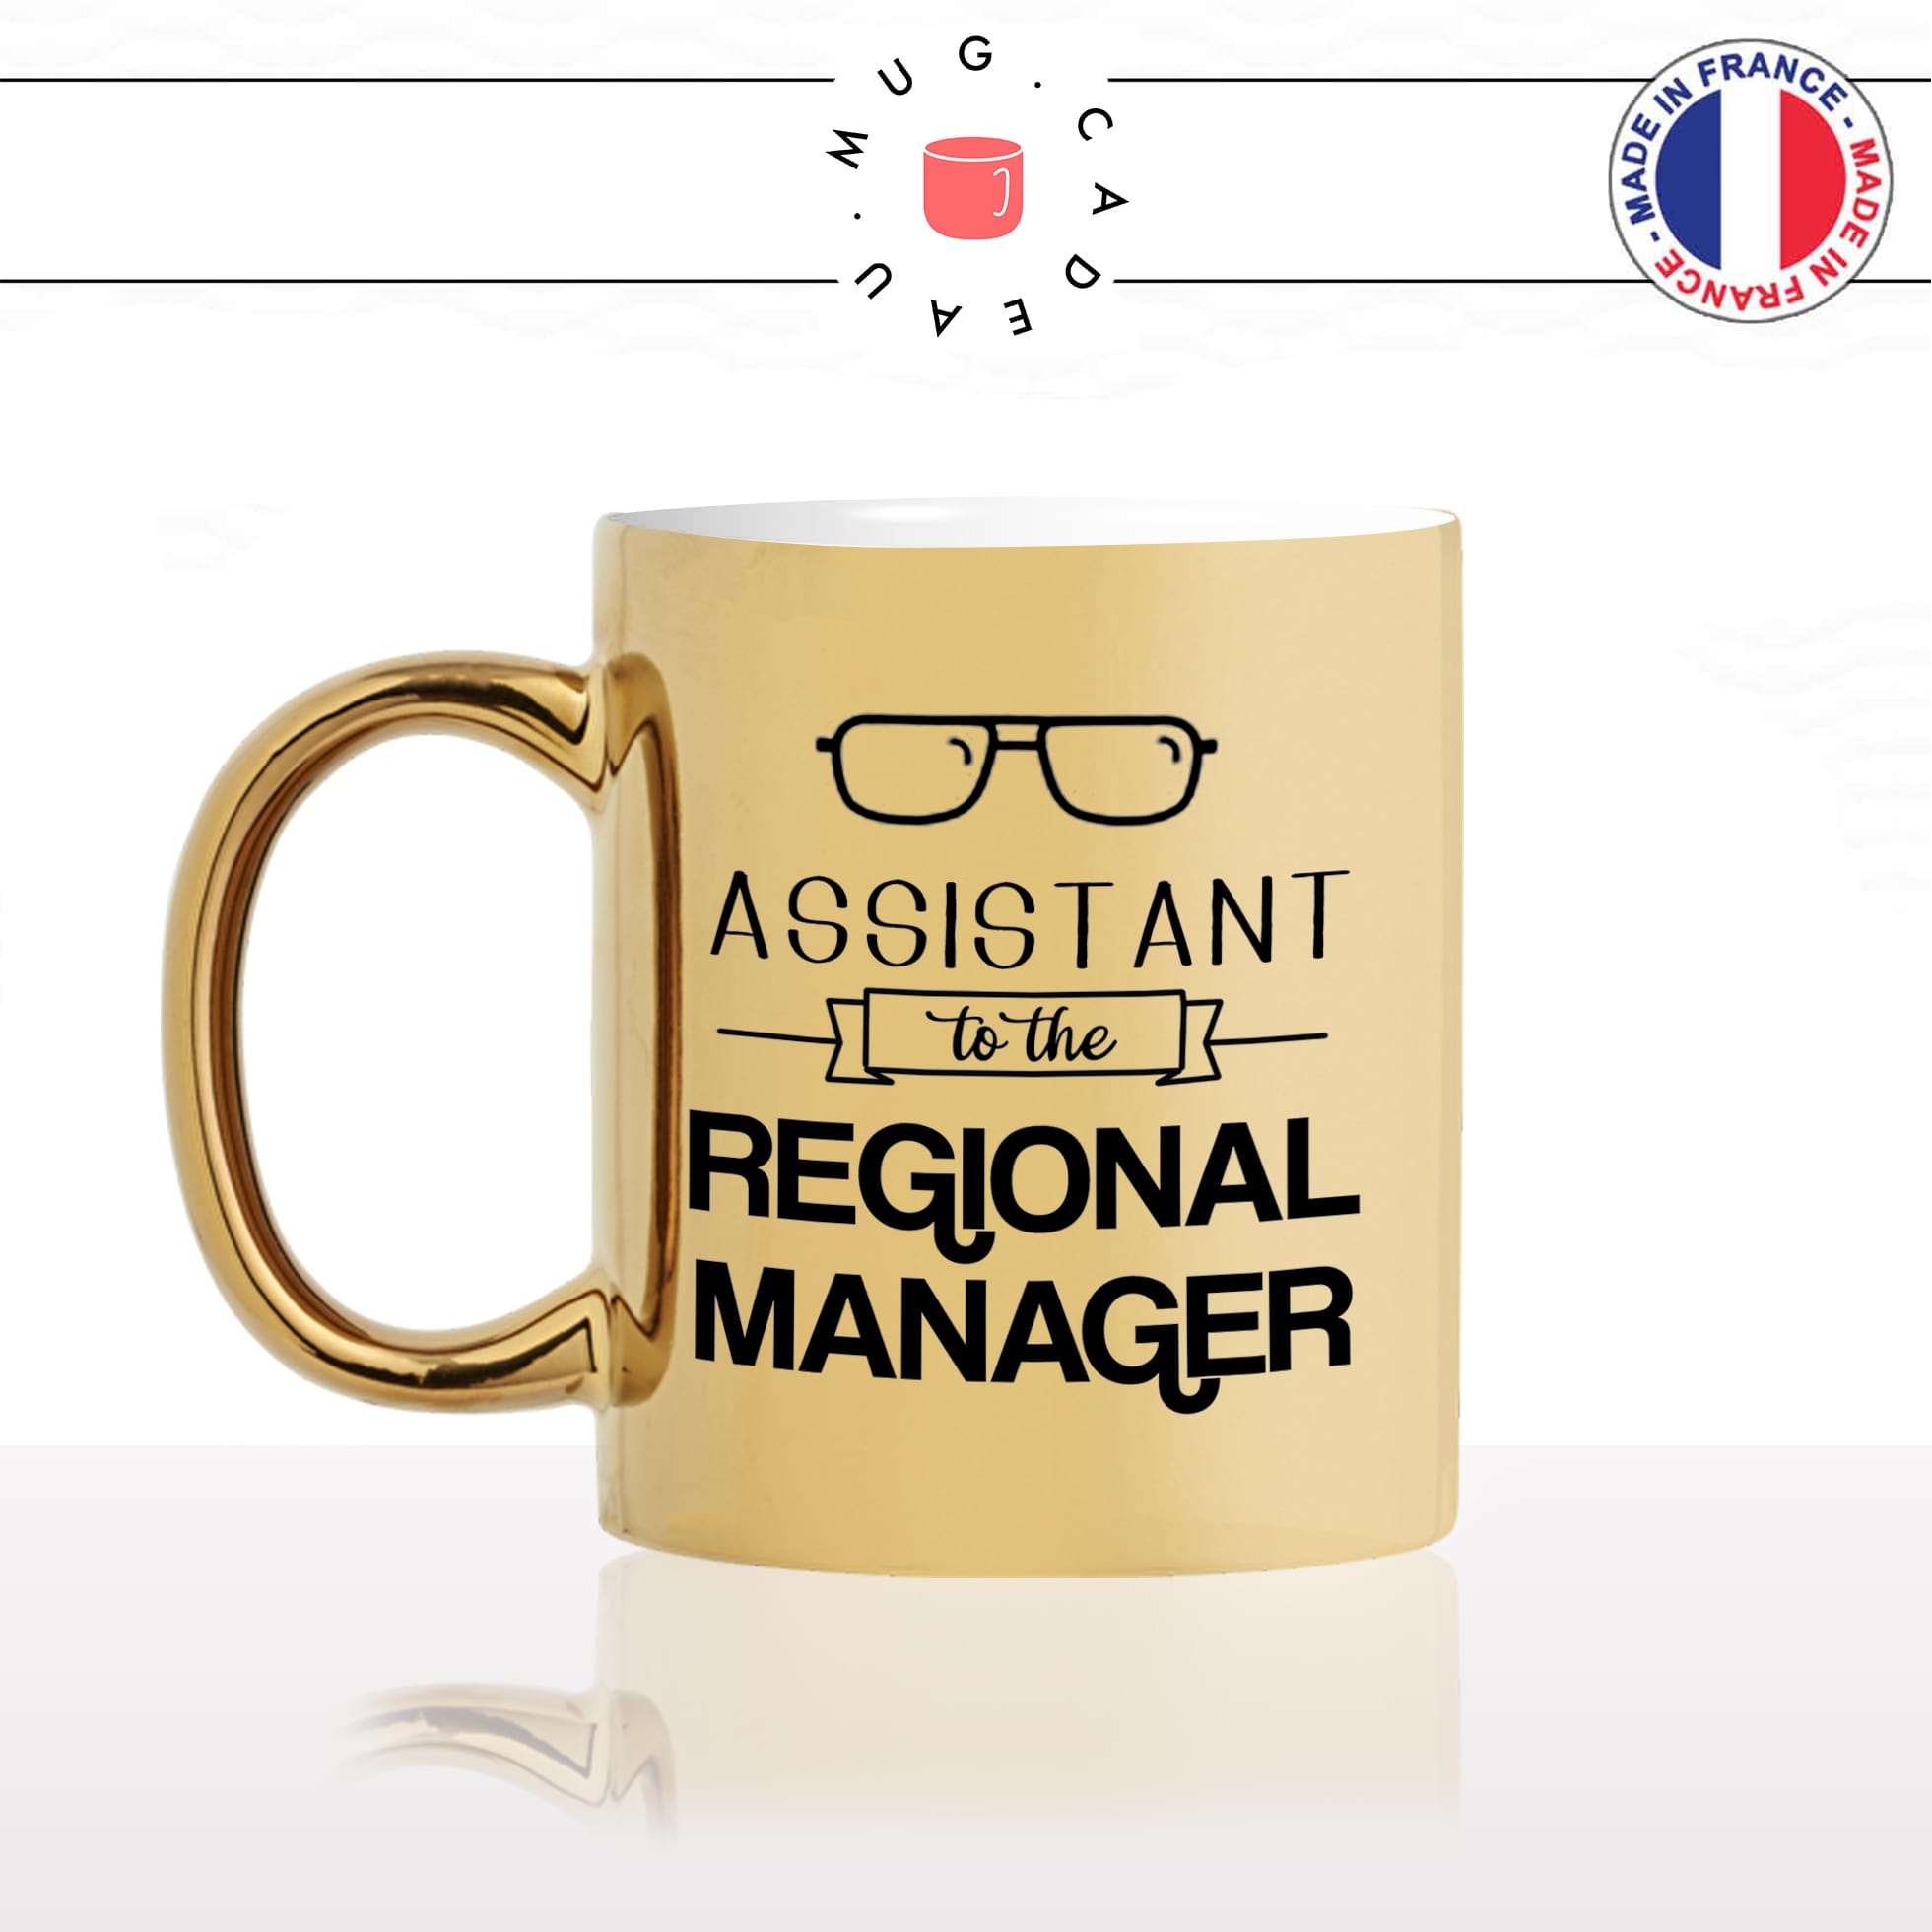 mug-tasse-doré-or-gold-série-culte-the-office-dwight-schrute-assistant-to-the-regional-manager-humour-fun-idée-cadeau-personnalisé-café-thé-min